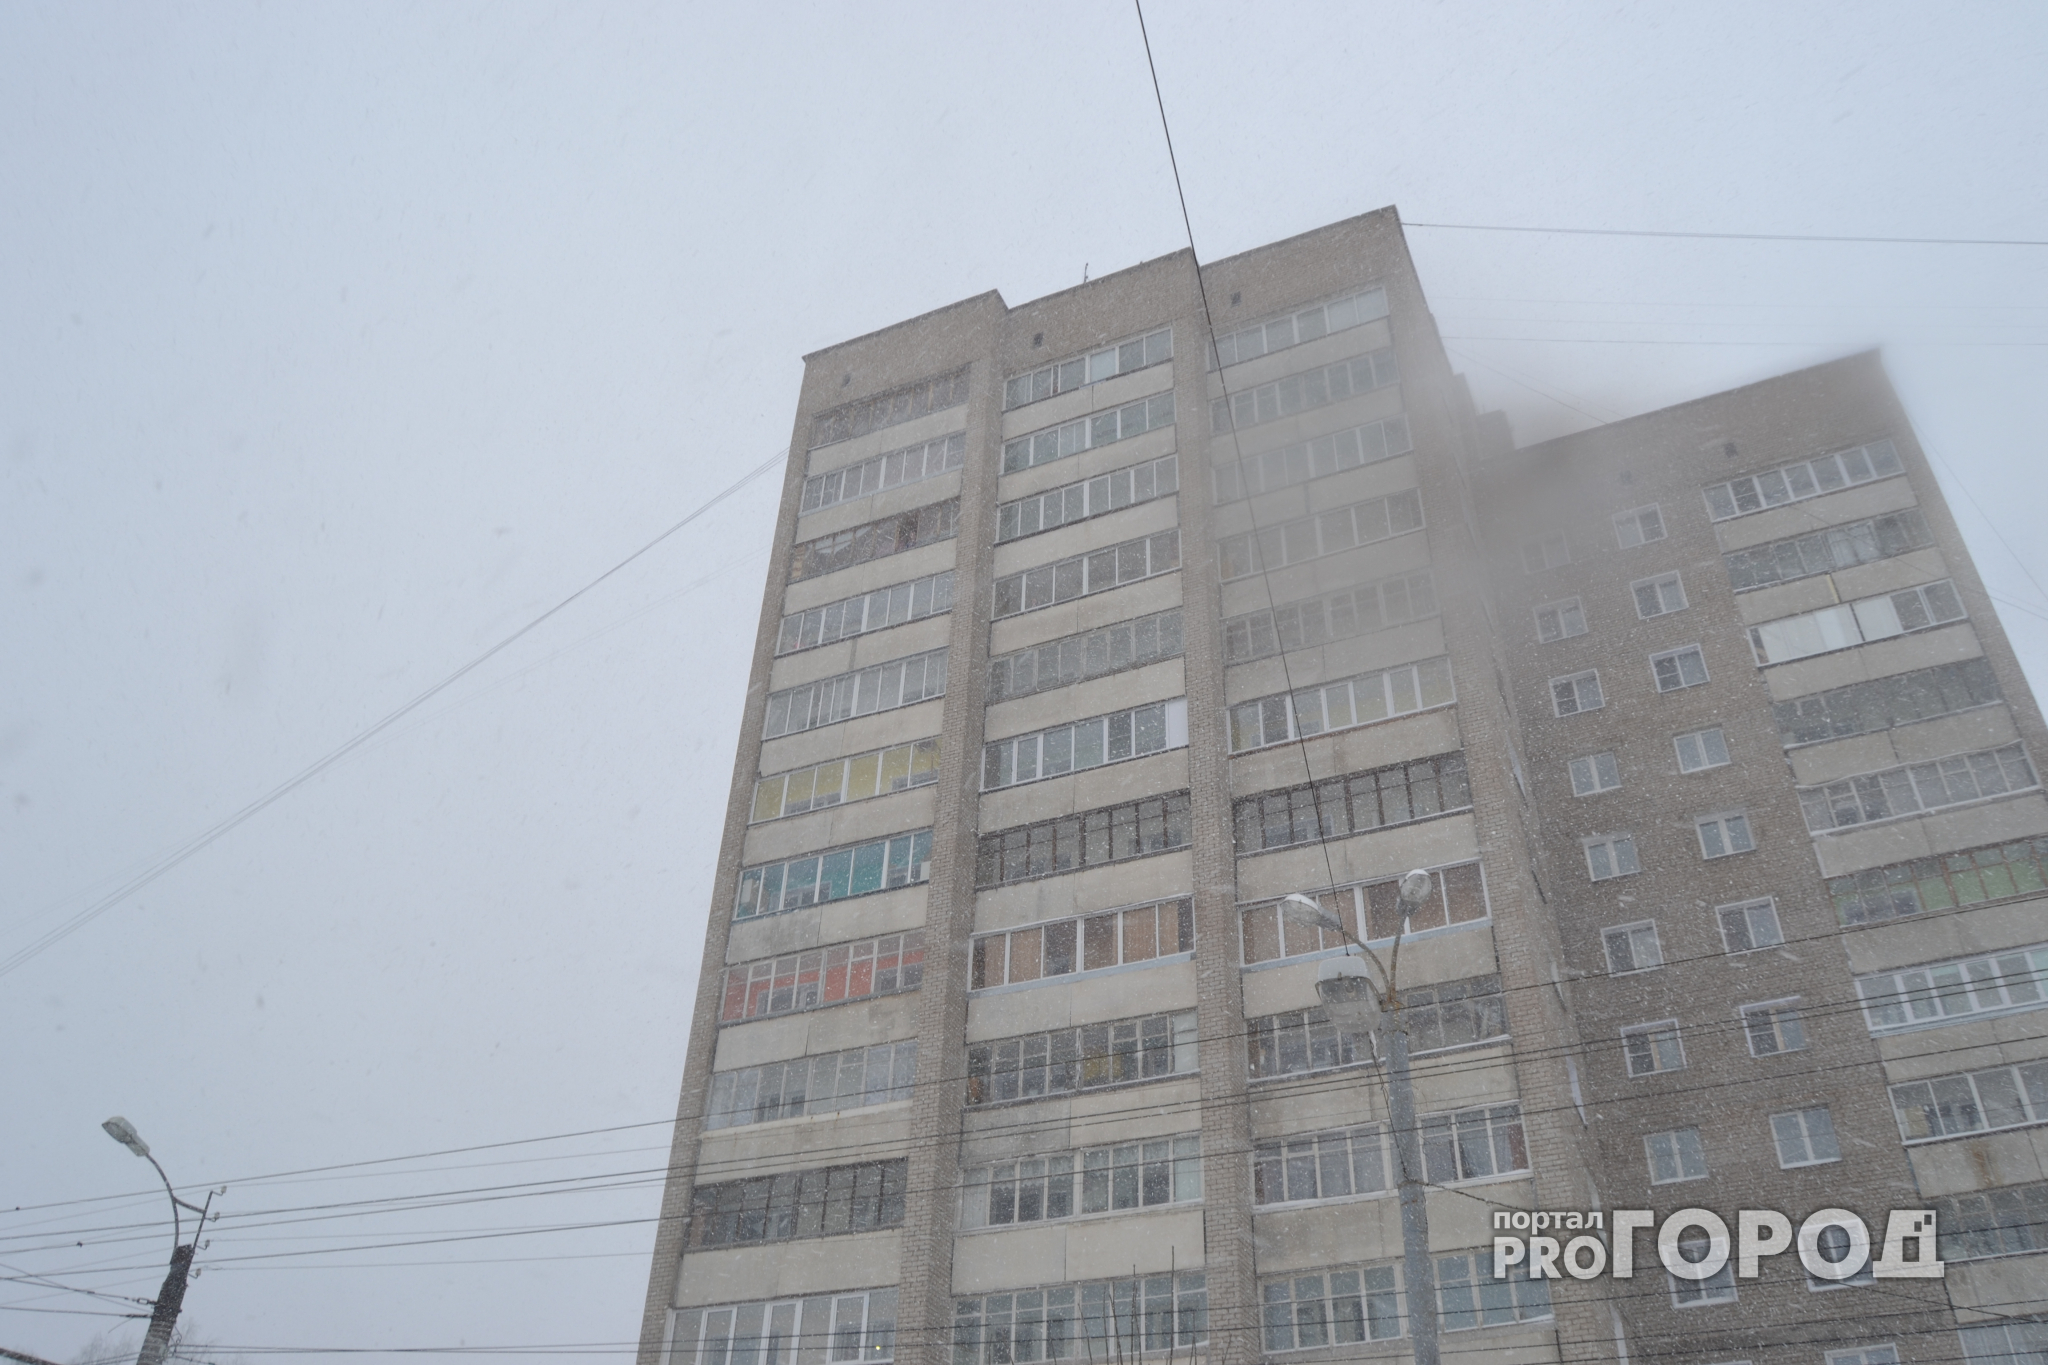 В Кирове через громкоговорители передают штормовое предупреждение